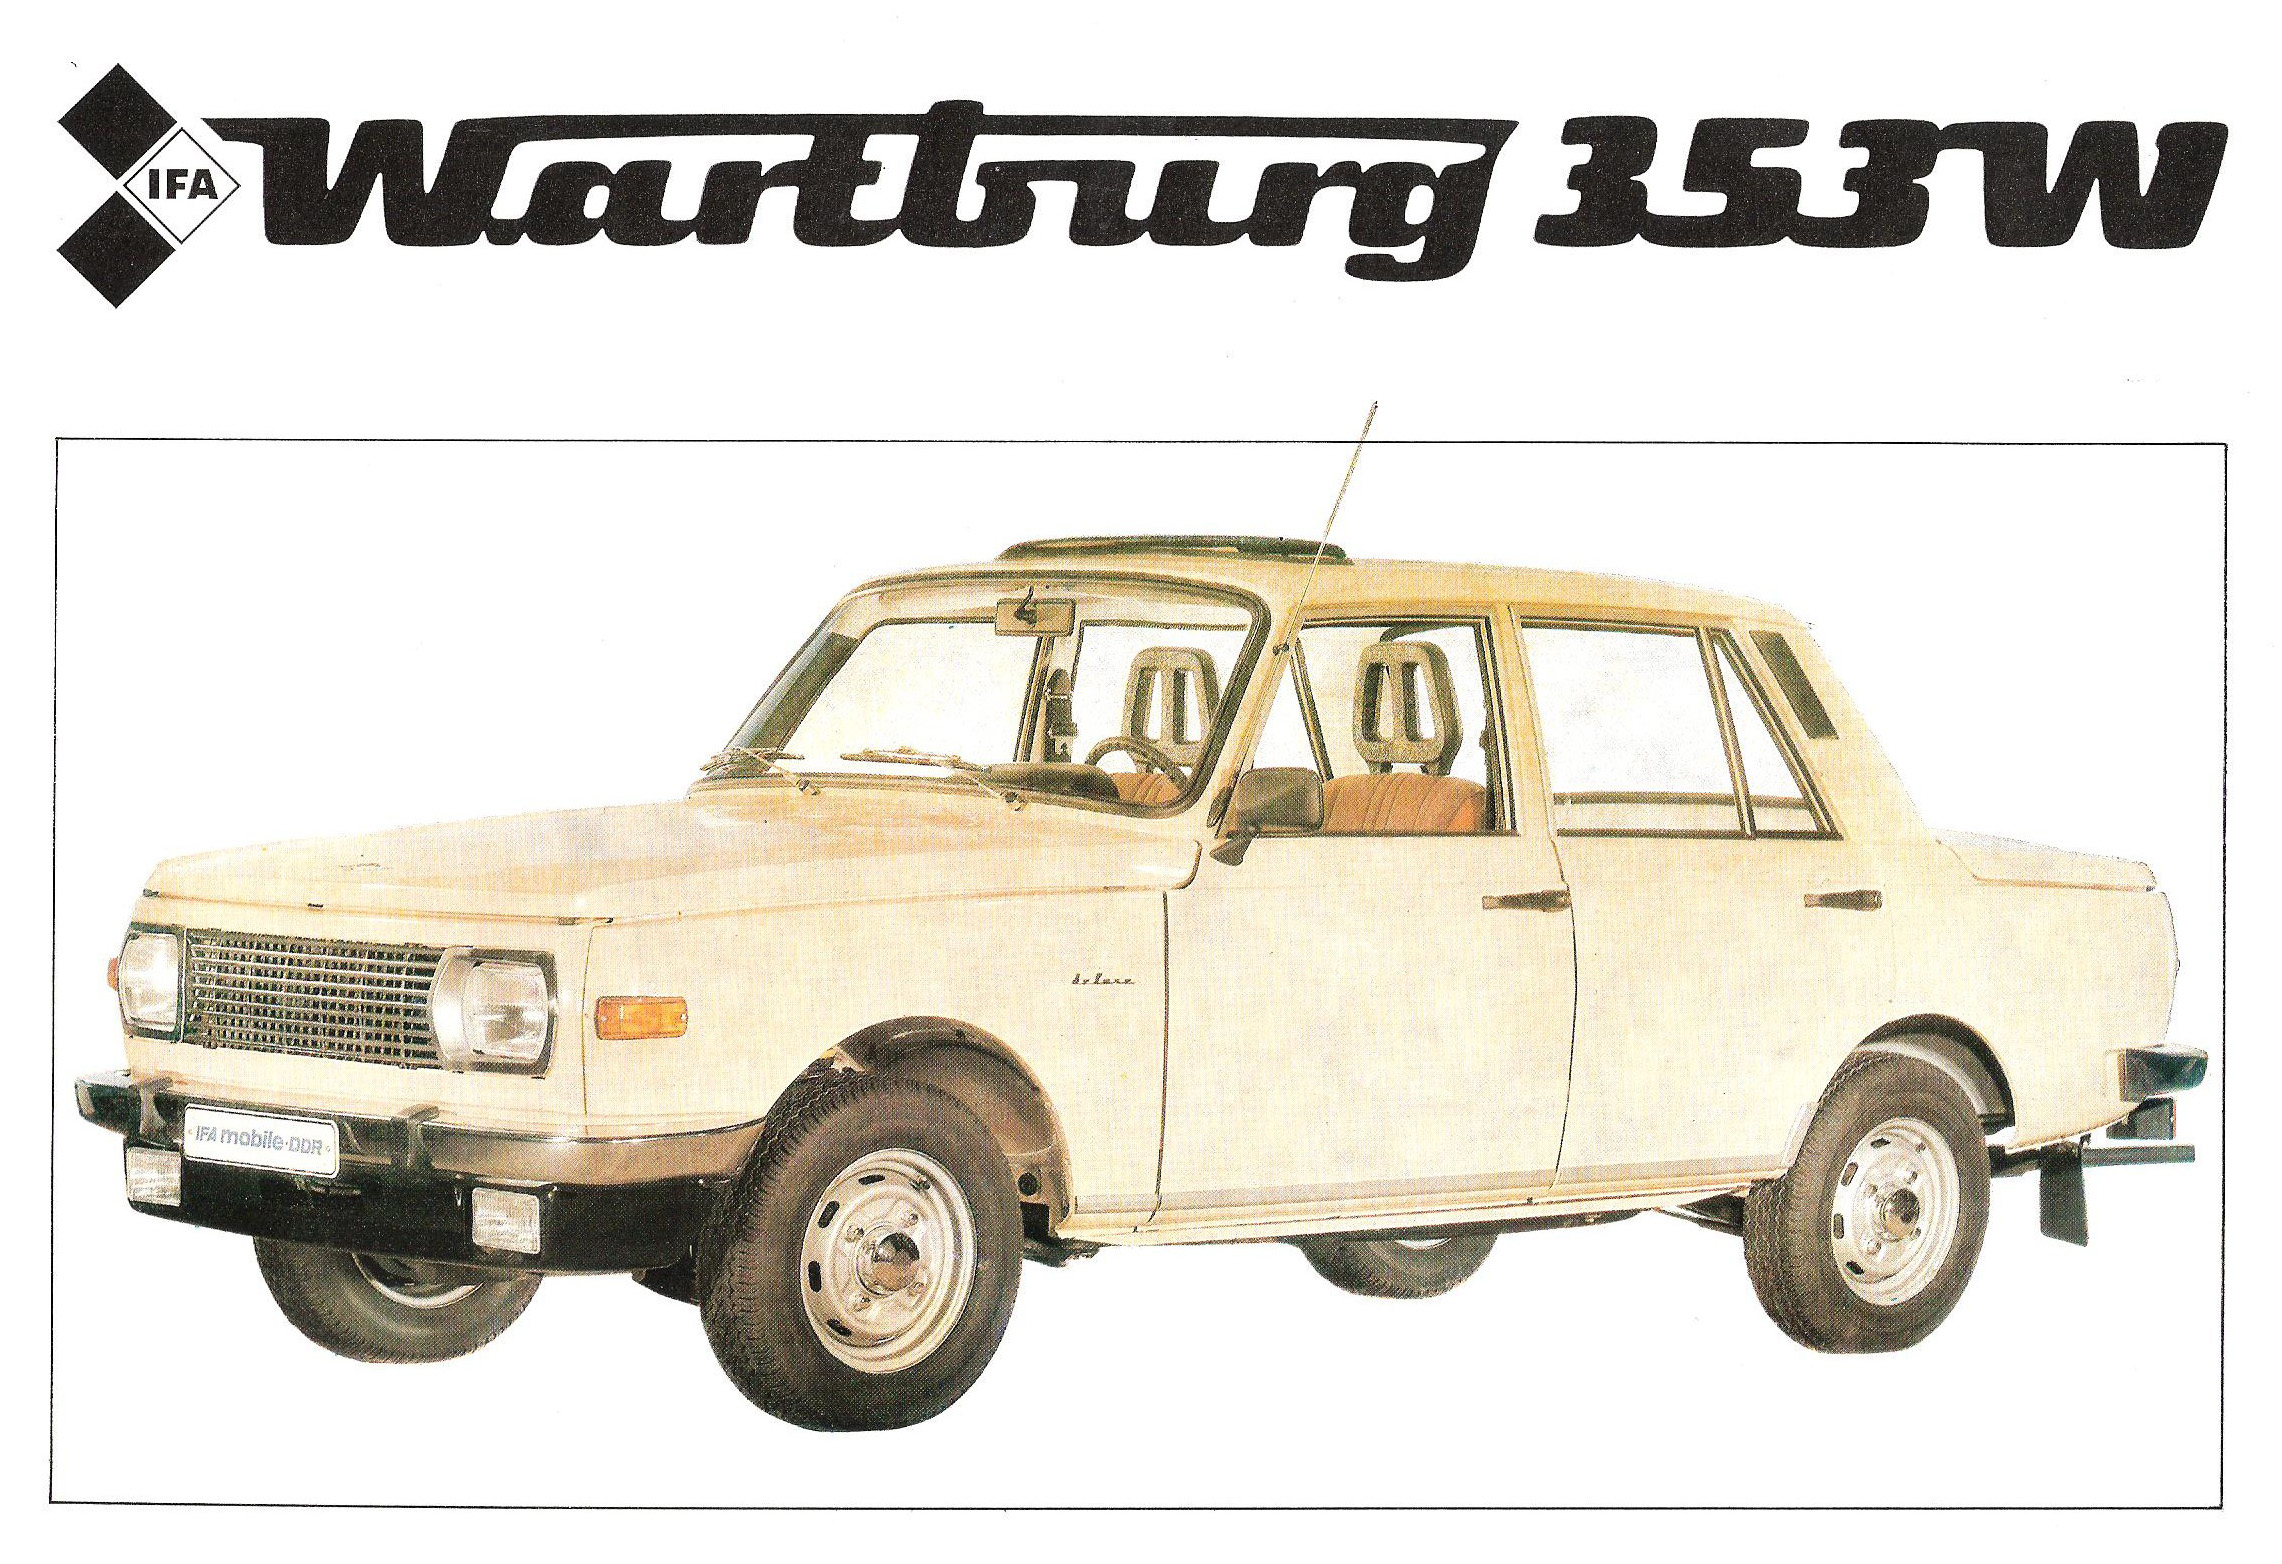 Wartburg 353